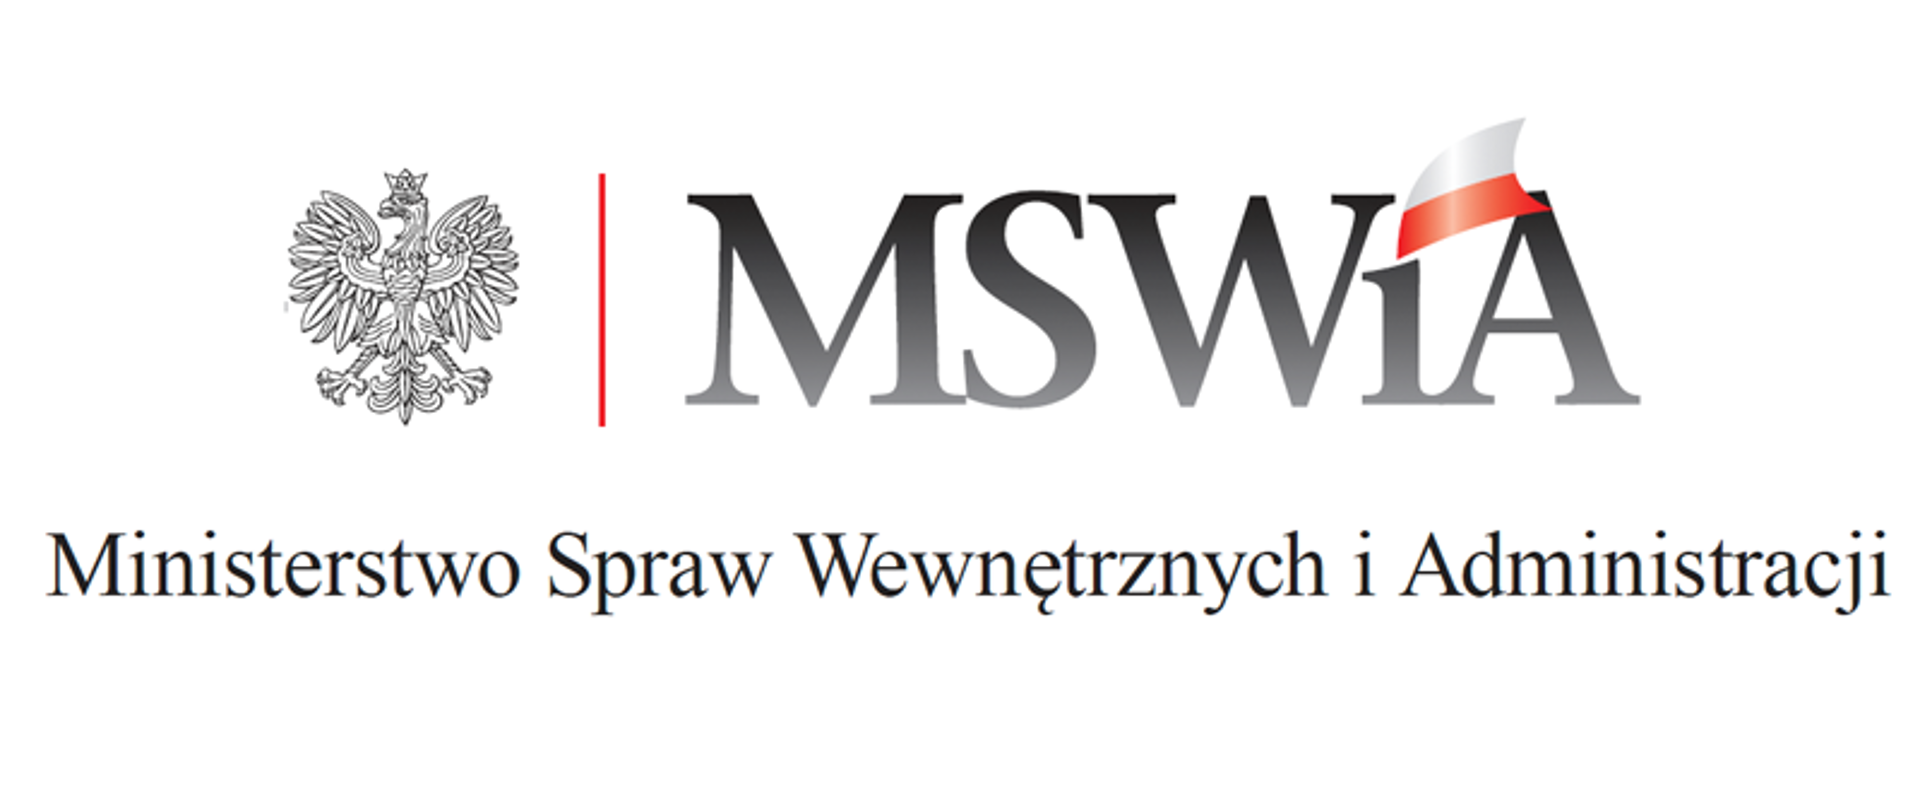 Logotyp MSWiA